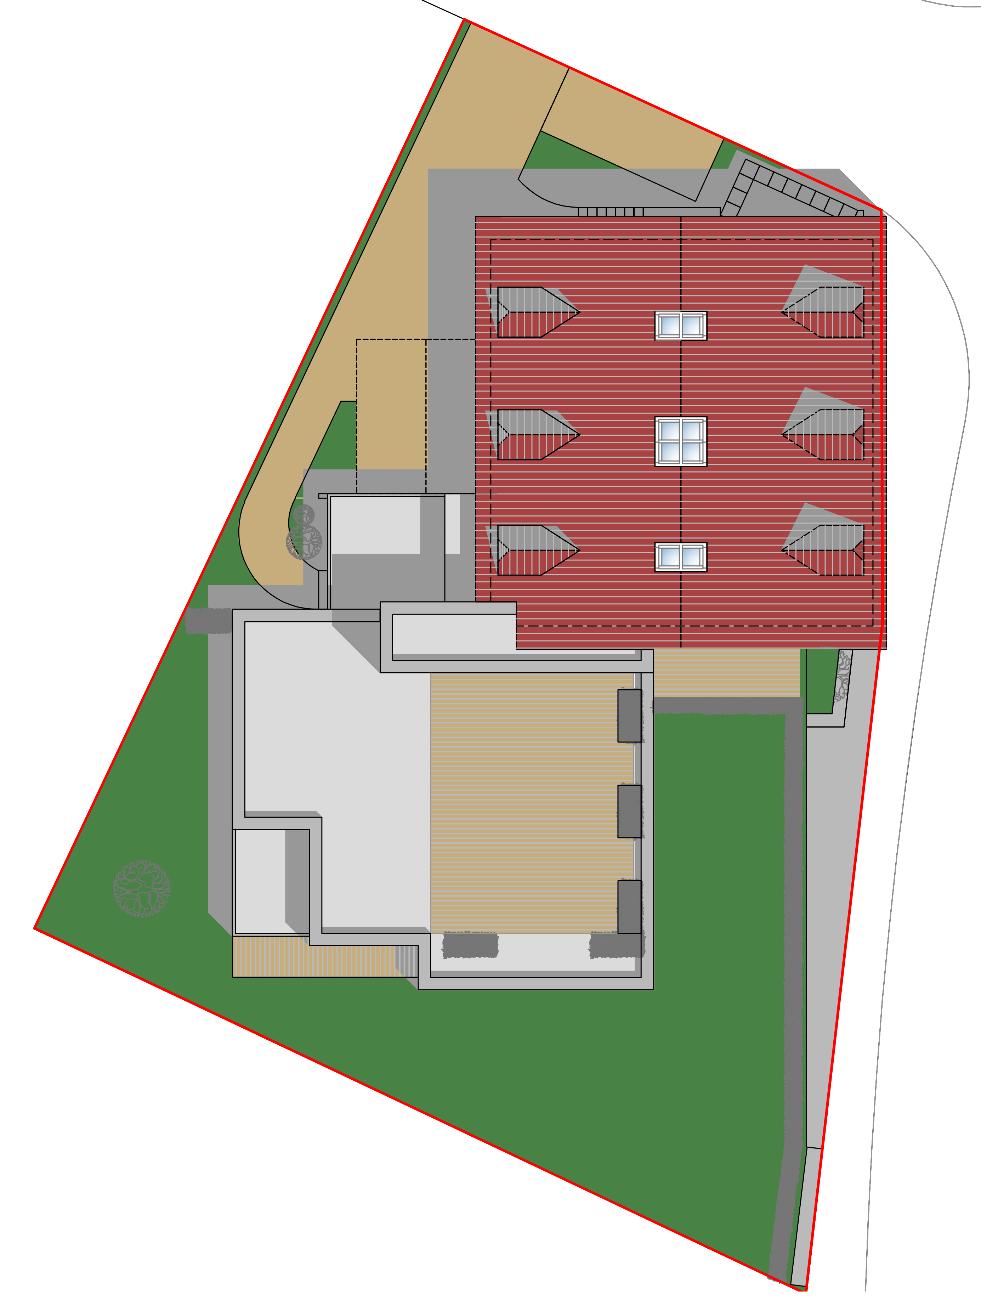 Zusammenfassende Objektdaten 3 Eigentumswohnungen im Bestandsgebäude mit ca. 450 m² Wohnfläche, Gartenanteil, Terrassen und Balkone, Denkmalschutzobjekt mit AFA- Anteil ca. 20 % - 40 % möglich.